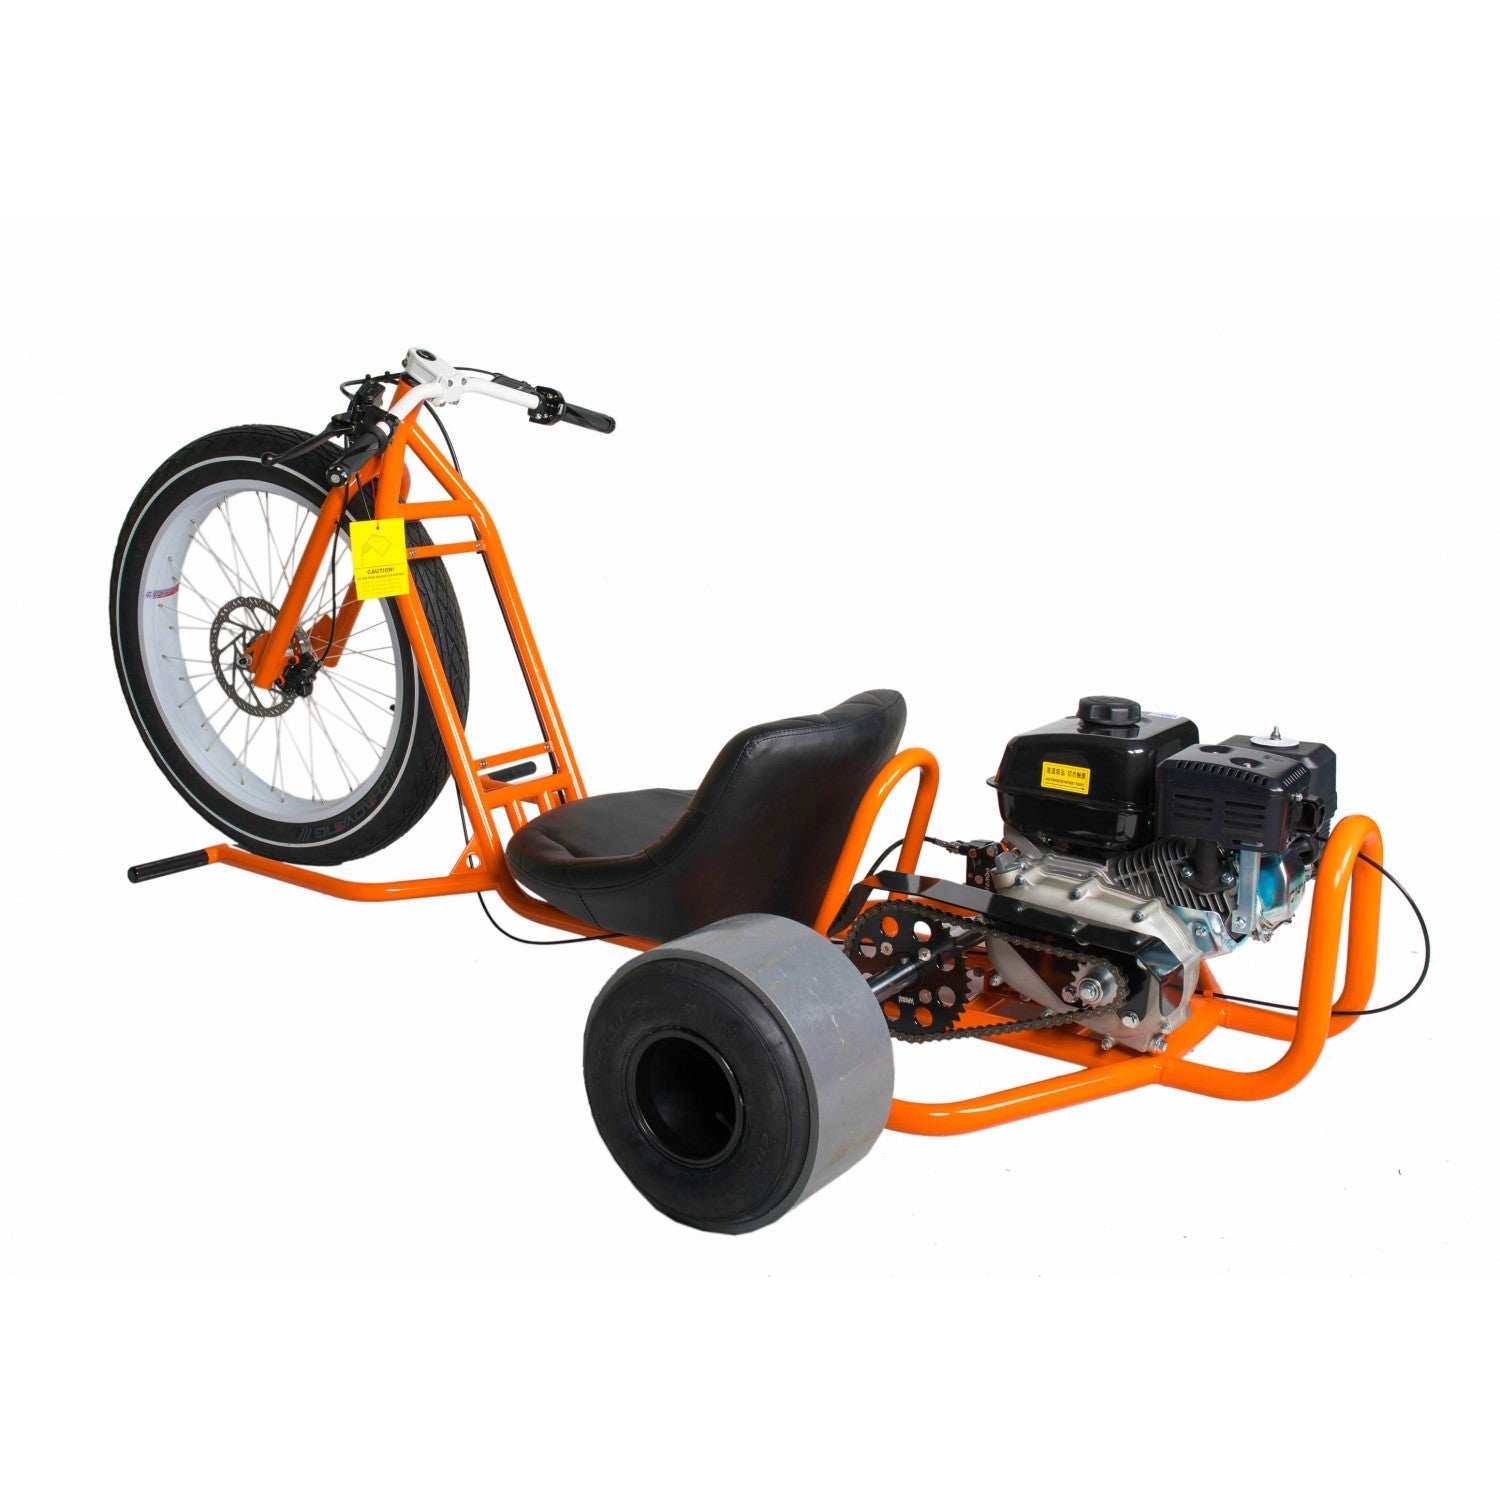 Drift trike for sale, Drift Trike Gang, Motorized Drift Trike